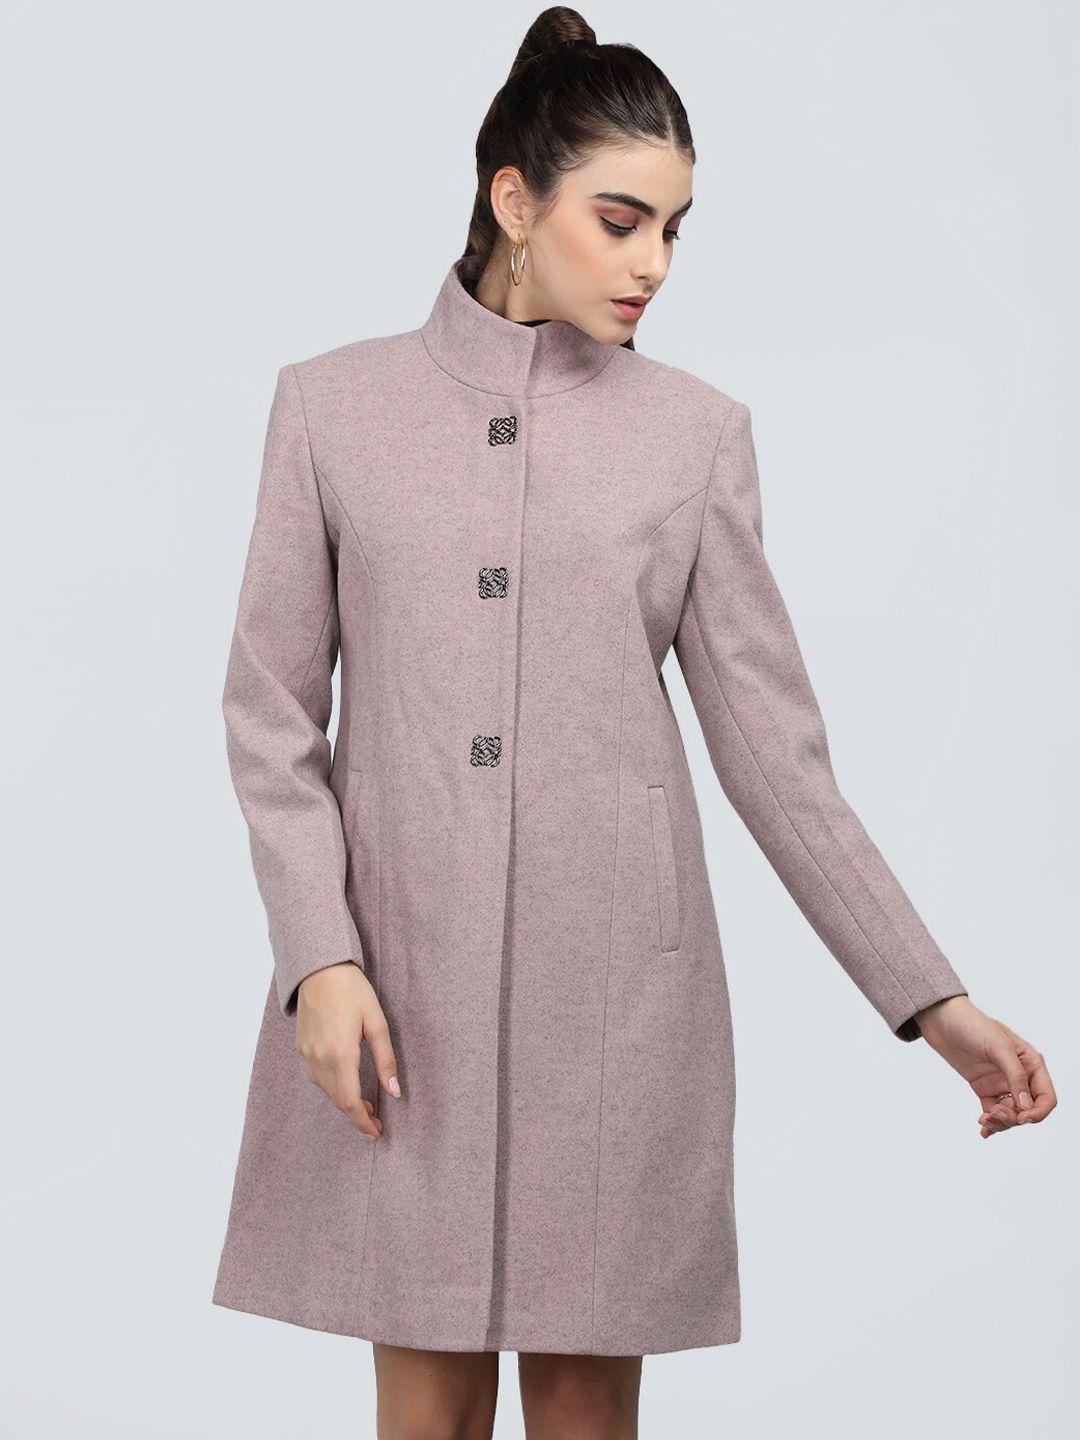 protex textured woollen longline overcoat